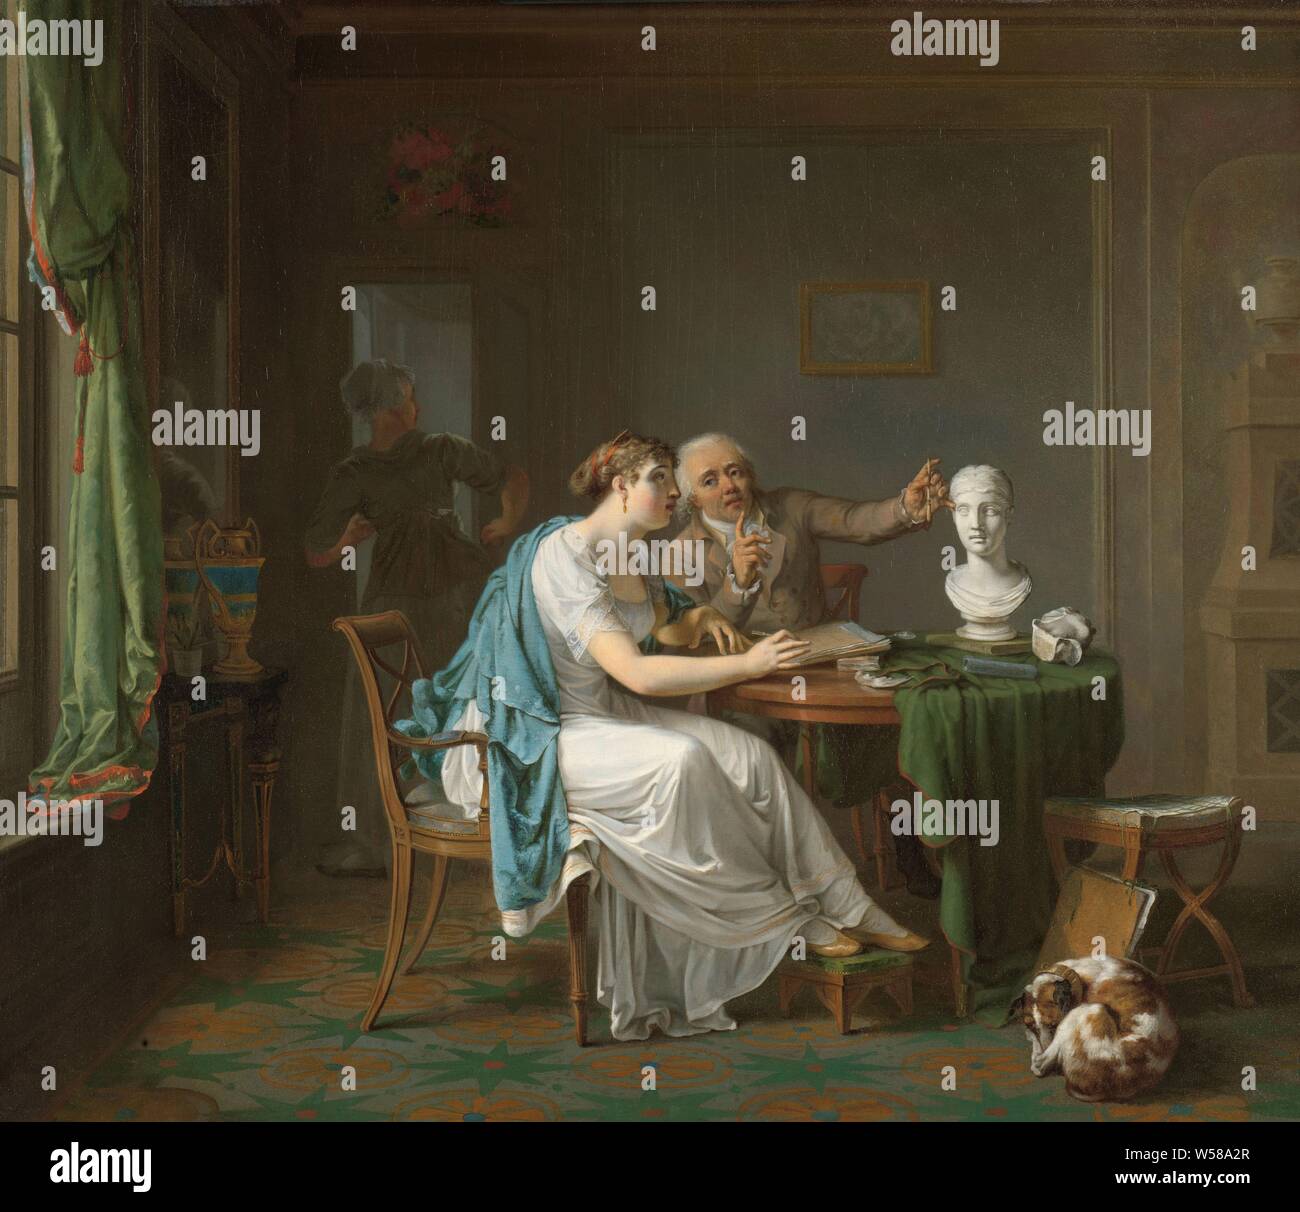 Die Zeichnung Lektion der Zeichnung Lektion, in einem Innenraum, ein Mann und eine junge Frau, die an einem Tisch sitzen. Die Frau hält ein Zeichenstift, auf dem Tisch liegt, Papier und anderen Zeichnung. Der Mann hält eine Zeichnung Stift neben einer Büste steht auf dem Tisch, während er lehr ist. Auf der rechten Seite ein Hund gegen eine Mappe mit Zeichnungen schläft, auf der linken ein Mädchen in der Tür ist. Vervielfältigung von Skulptur, Louis Moritz, 1808, Ölfarbe (Lack), Holz (Pflanzen), h 46 cm x W 53 cm Stockfoto